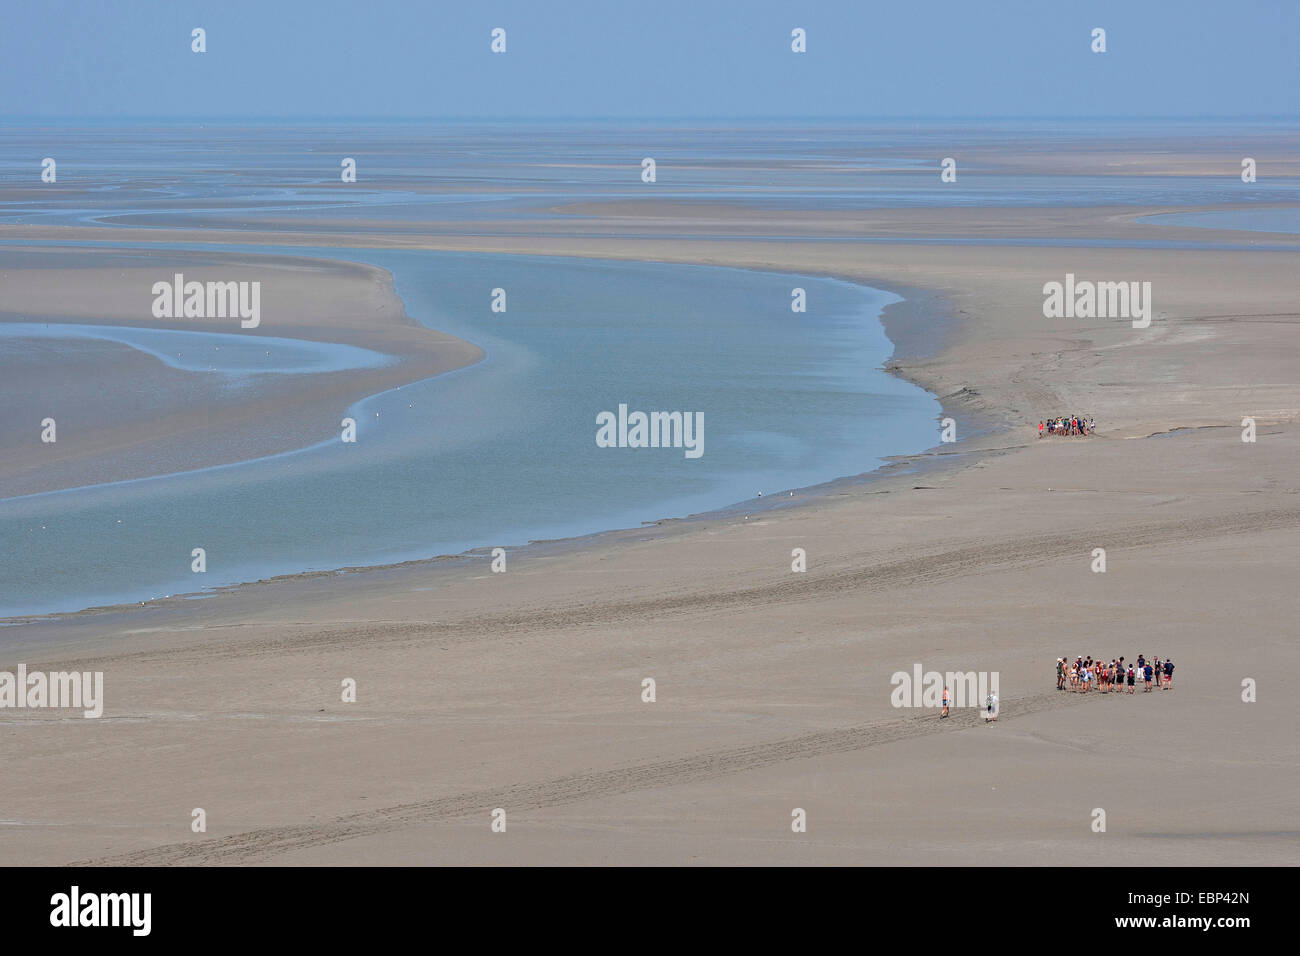 Tideland de arena durante la marea baja, con planos de marea excursionistas, Francia, Bretaña Foto de stock